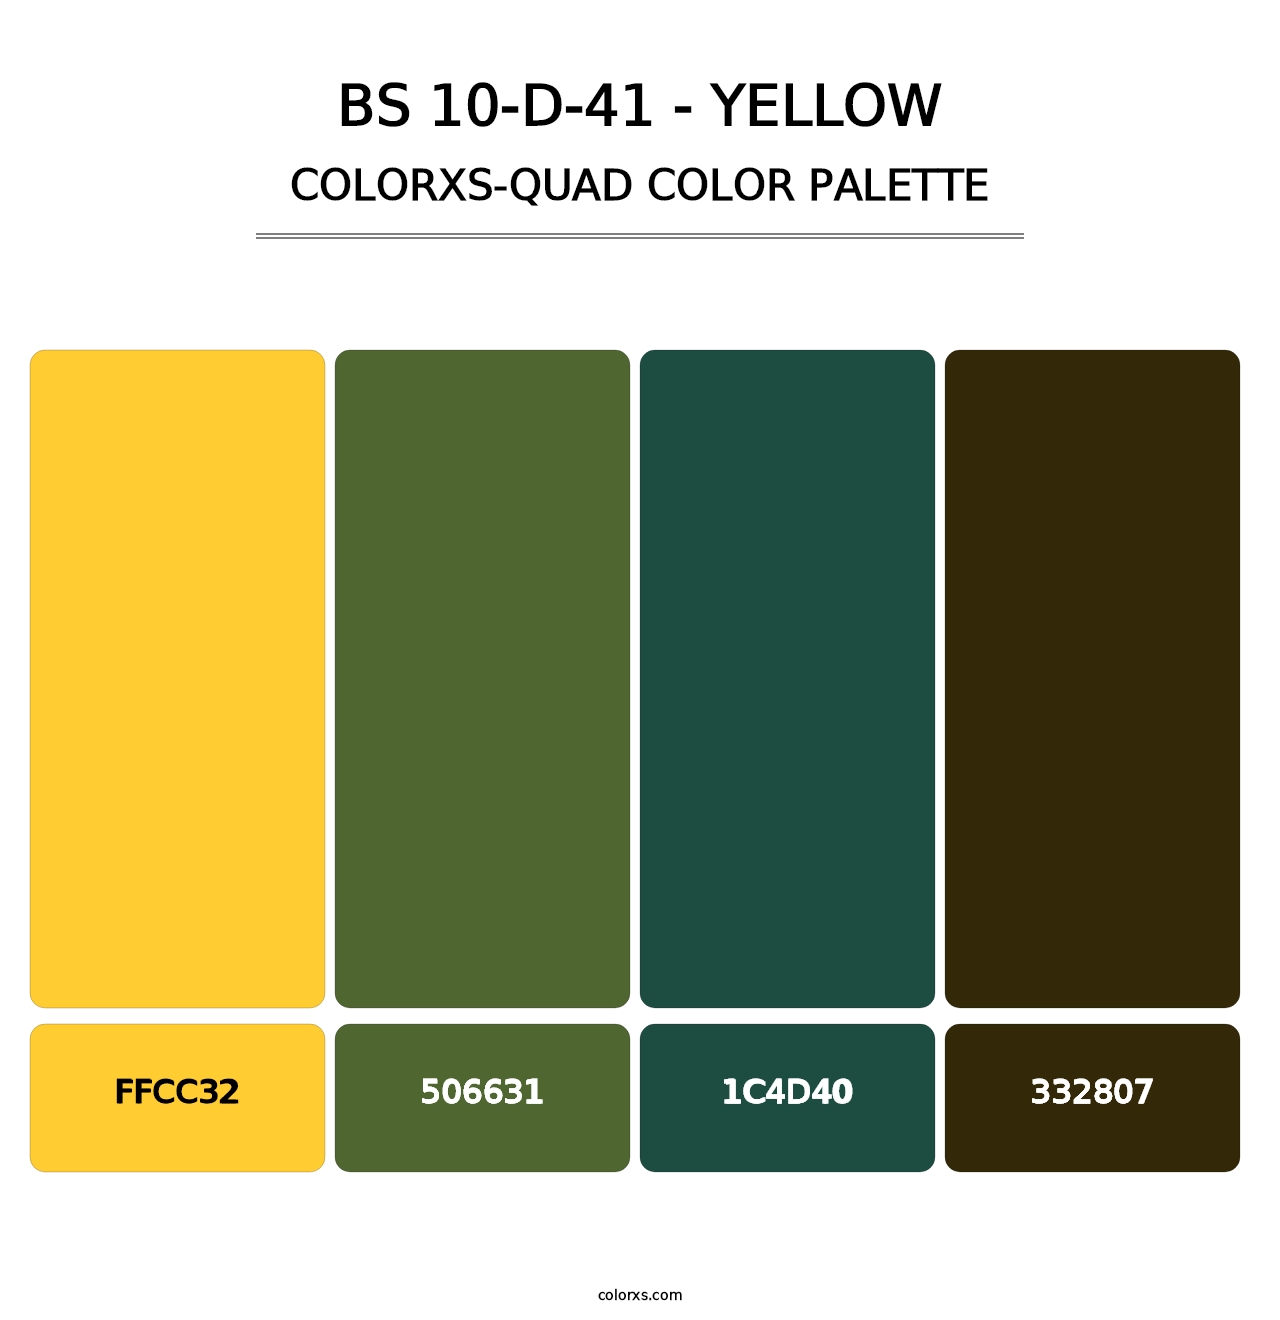 BS 10-D-41 - Yellow - Colorxs Quad Palette